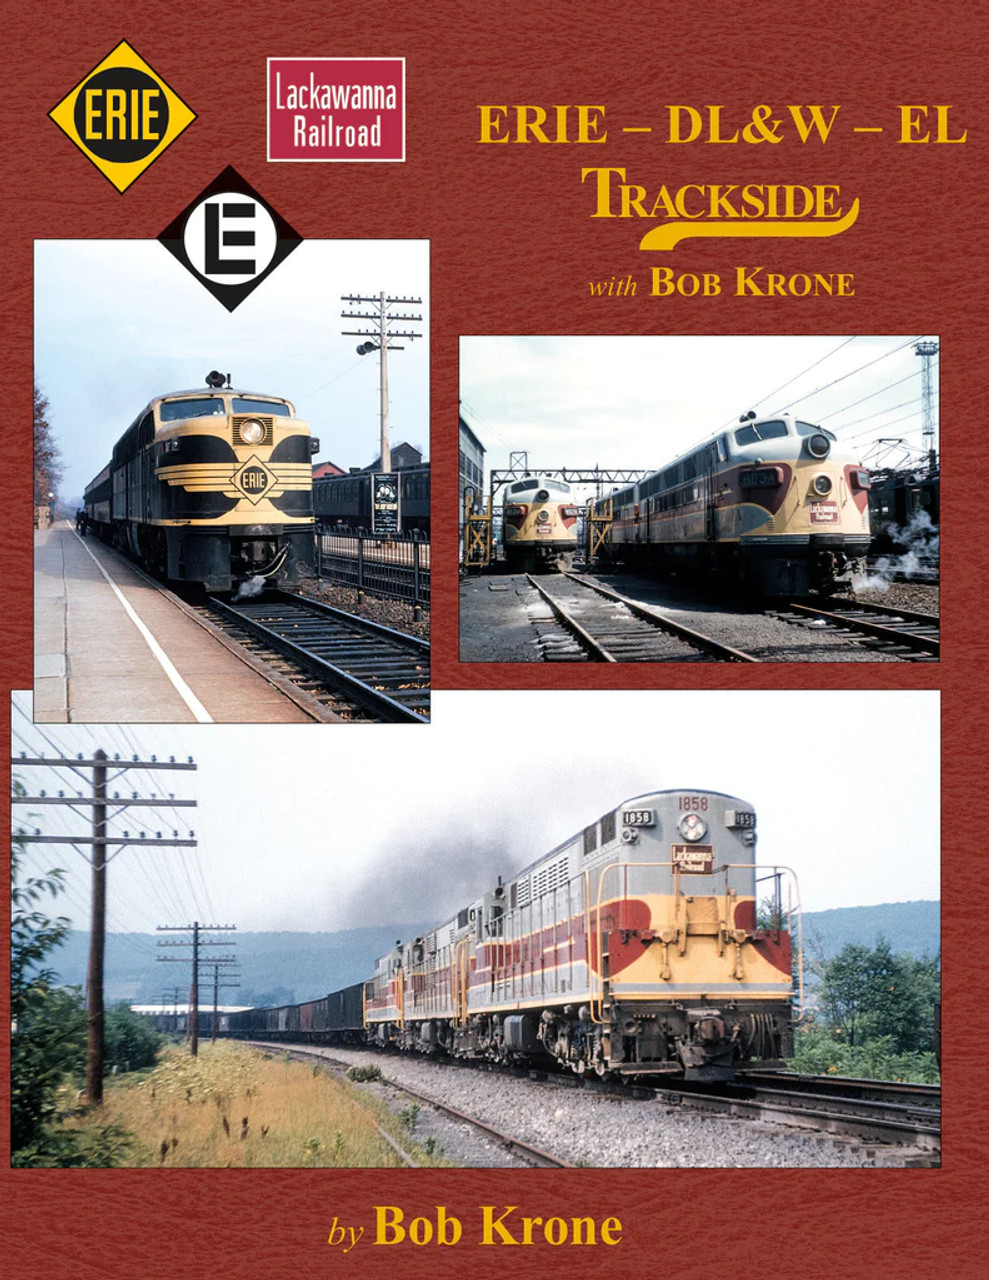 Morning Sun 1605 Erie - DL&W - EL Trackside with Bob Krone (Trk #113)